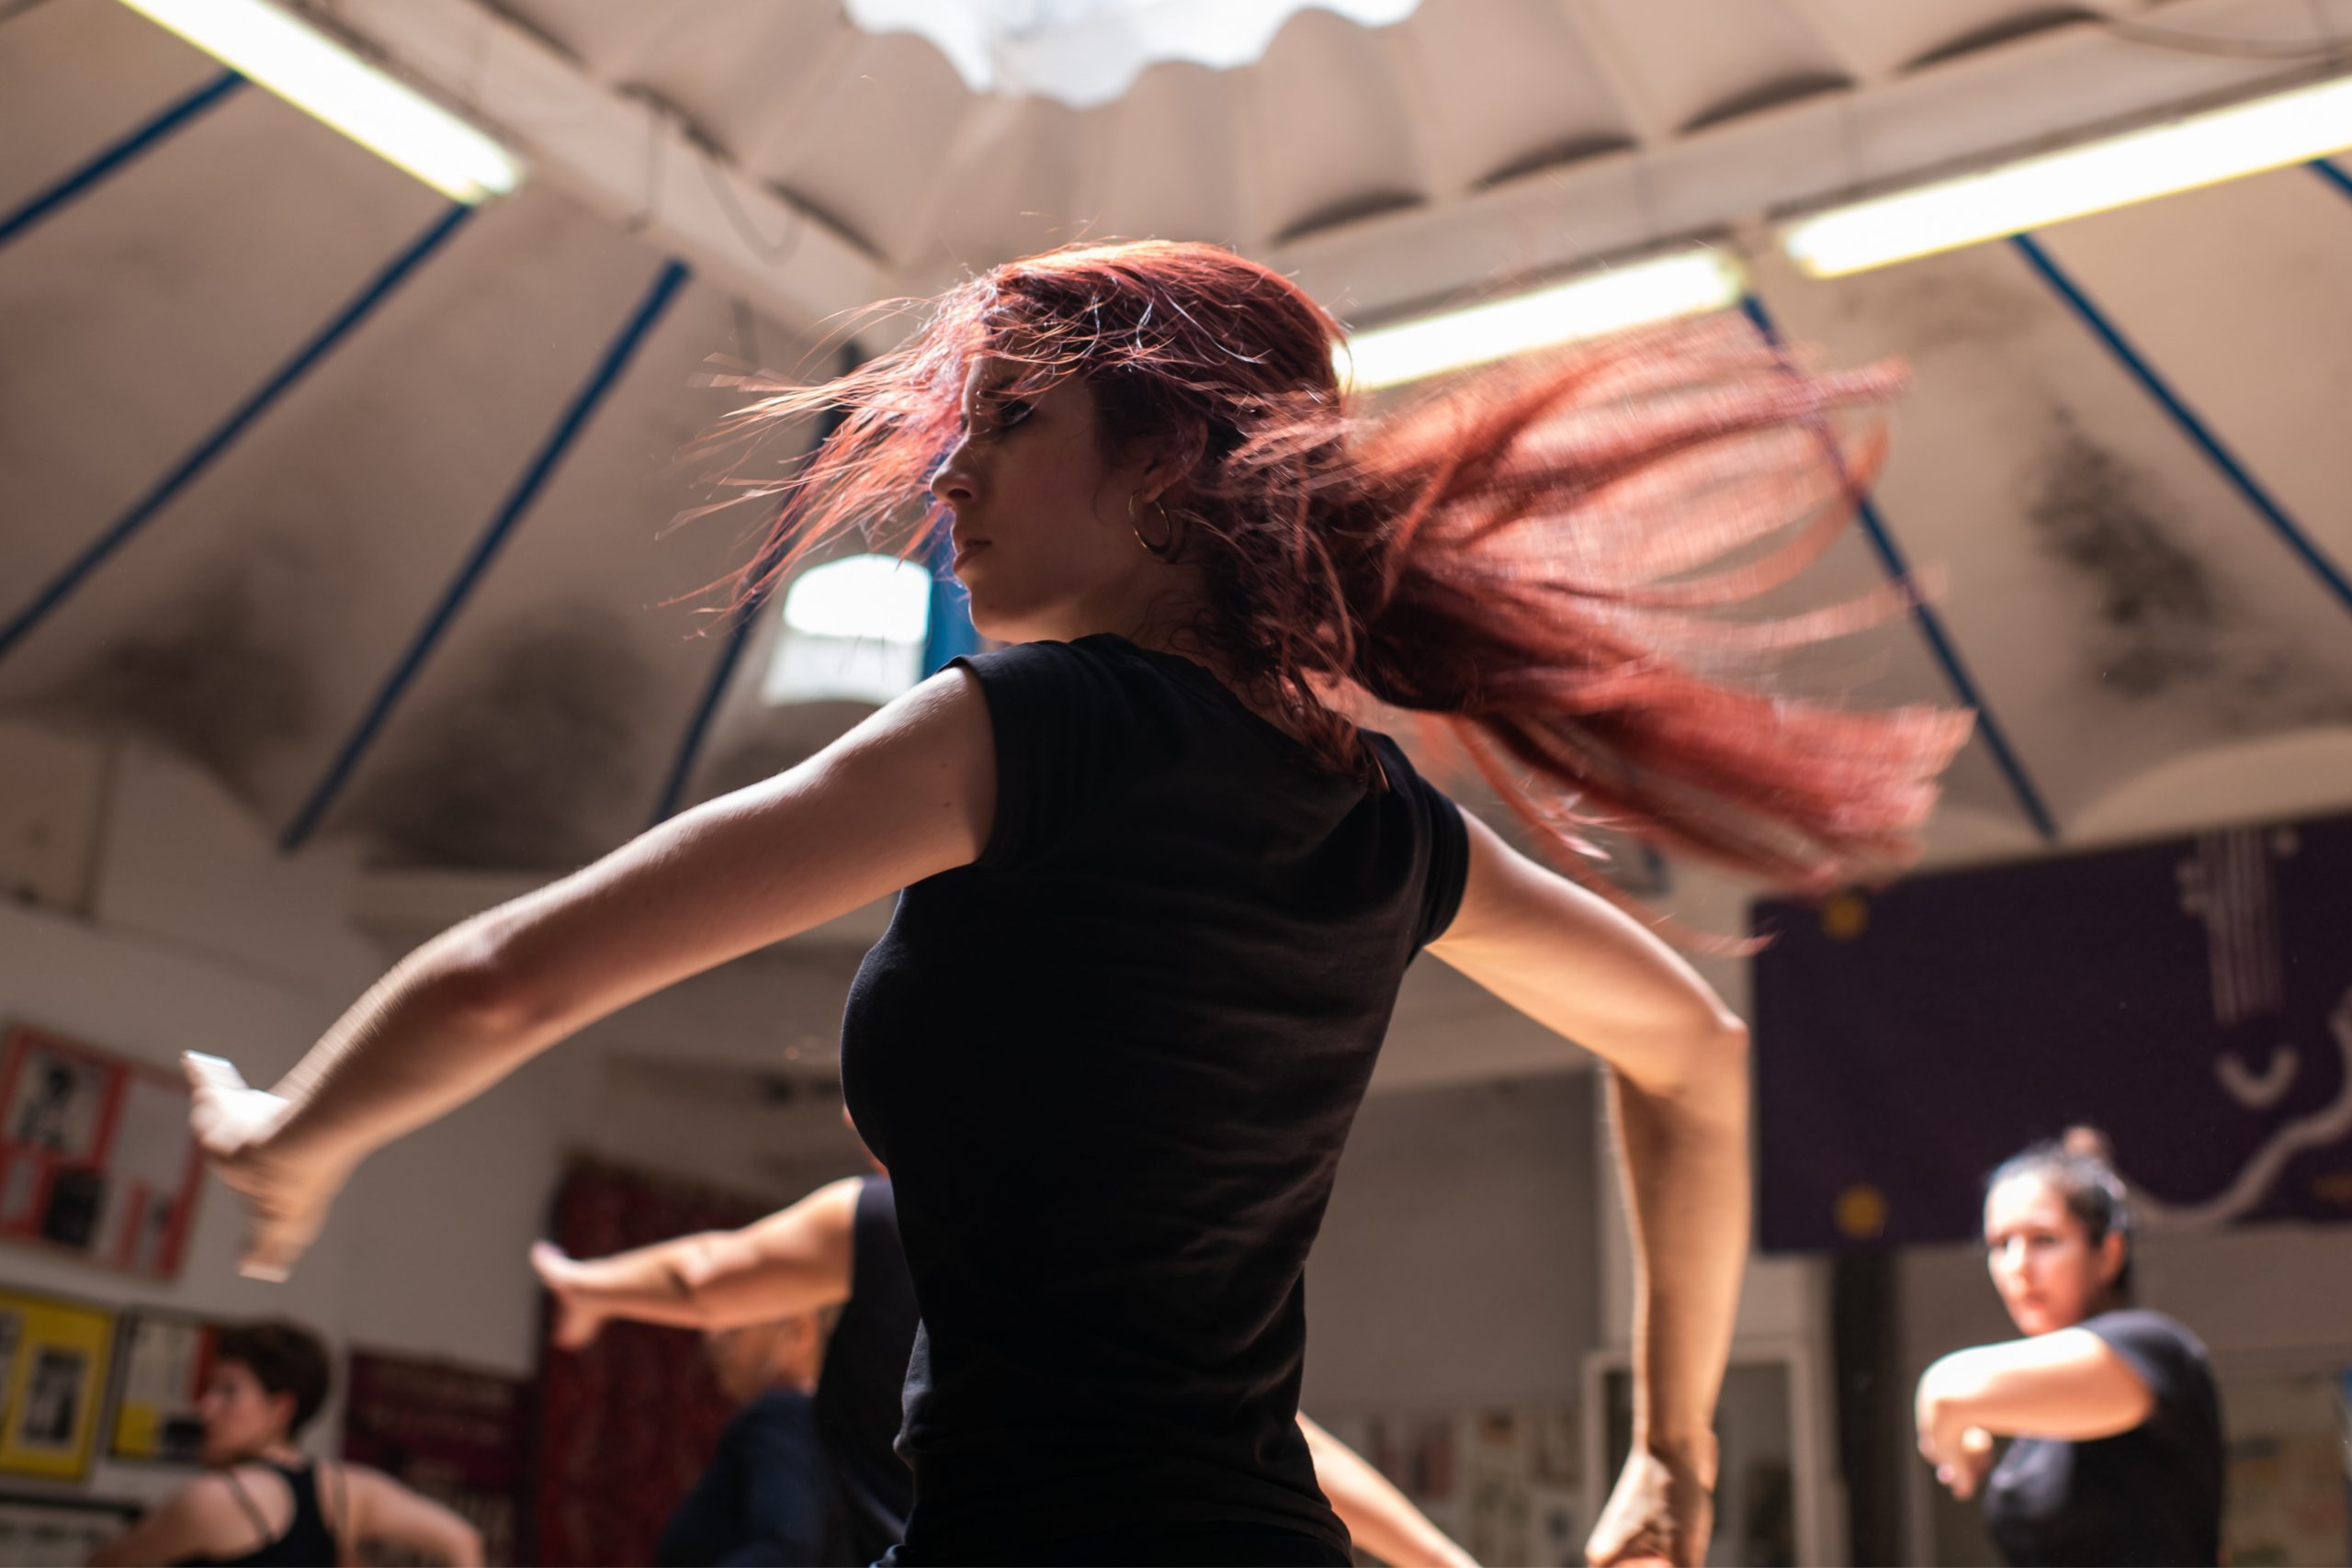 Escuela baile flamenco Barcelona | Clases de baile flamencoi